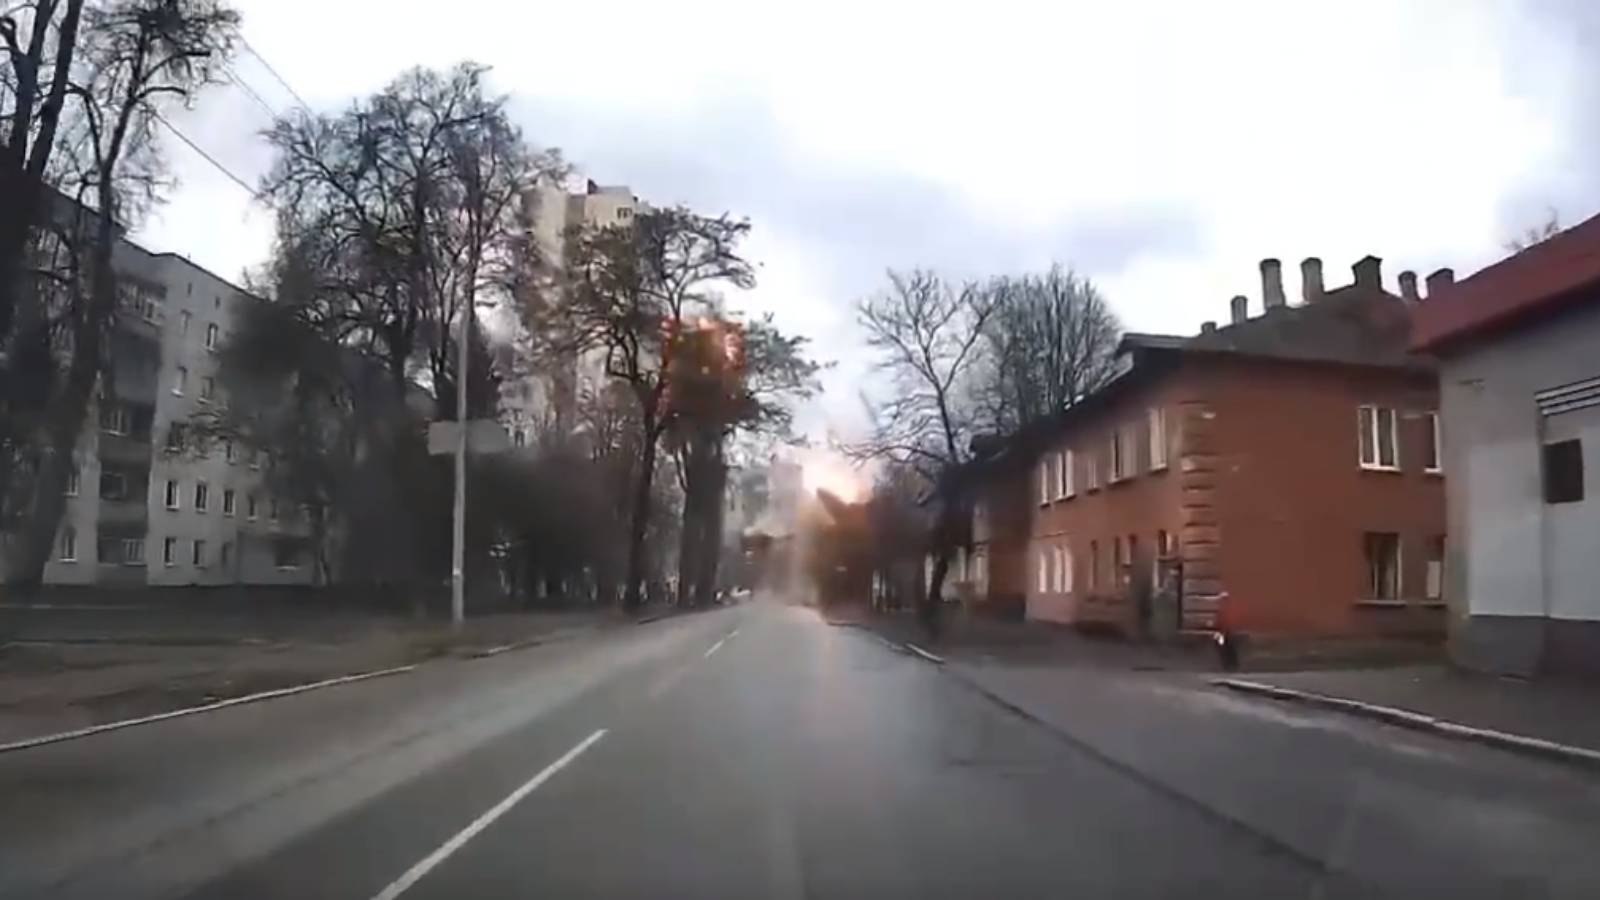 VIDEO Cohete filmado destruye casa Chernigov